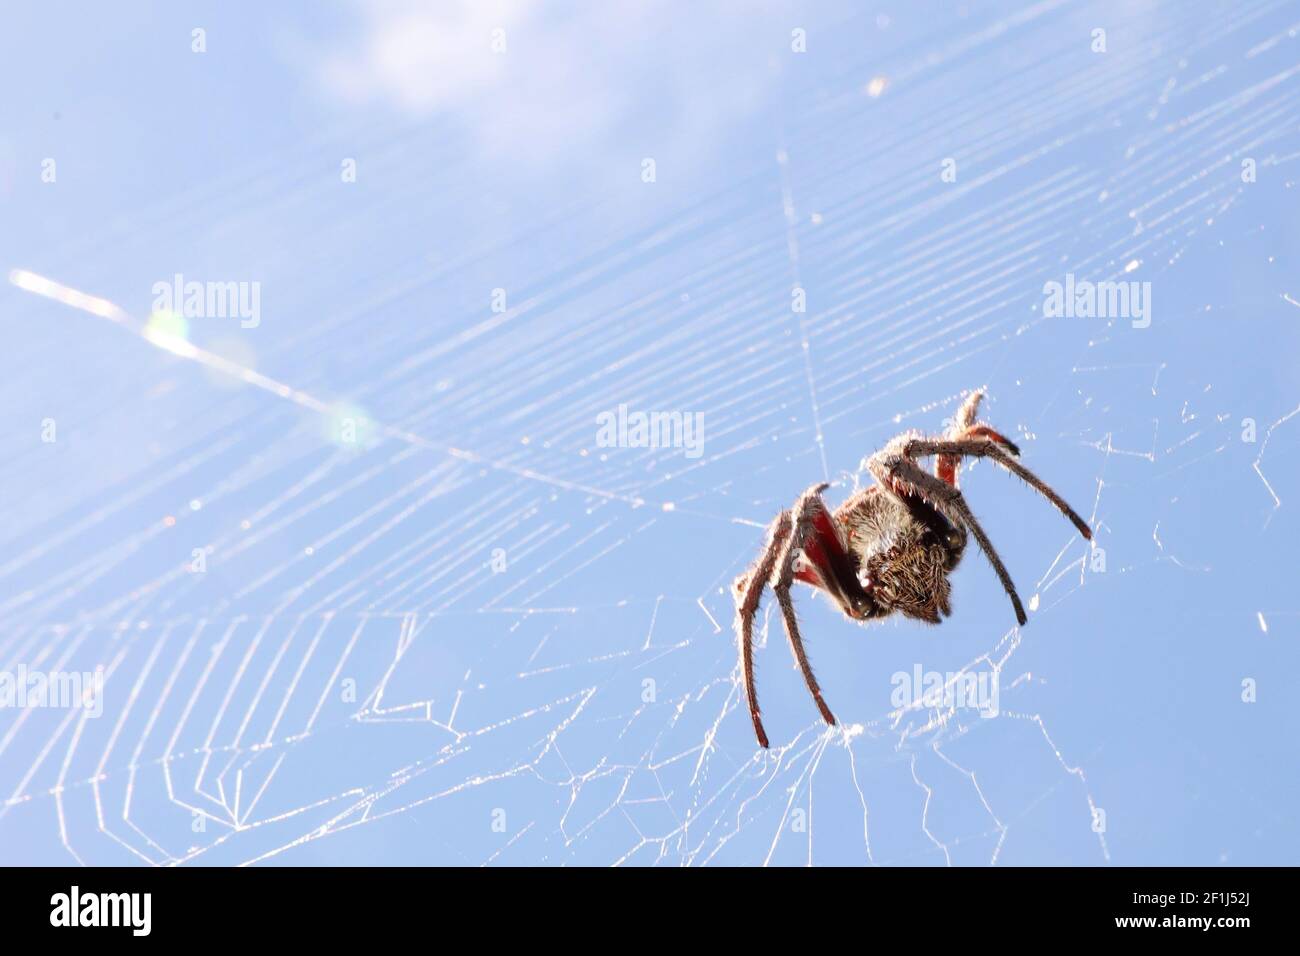 Ein interessanter niedriger Winkel Blick auf eine große braune haarige Spinne in einem weißen sauberen Netz. Isoliert gegen einen hellen, klaren Himmel tagsüber Himmel. Landschaft - hor Stockfoto